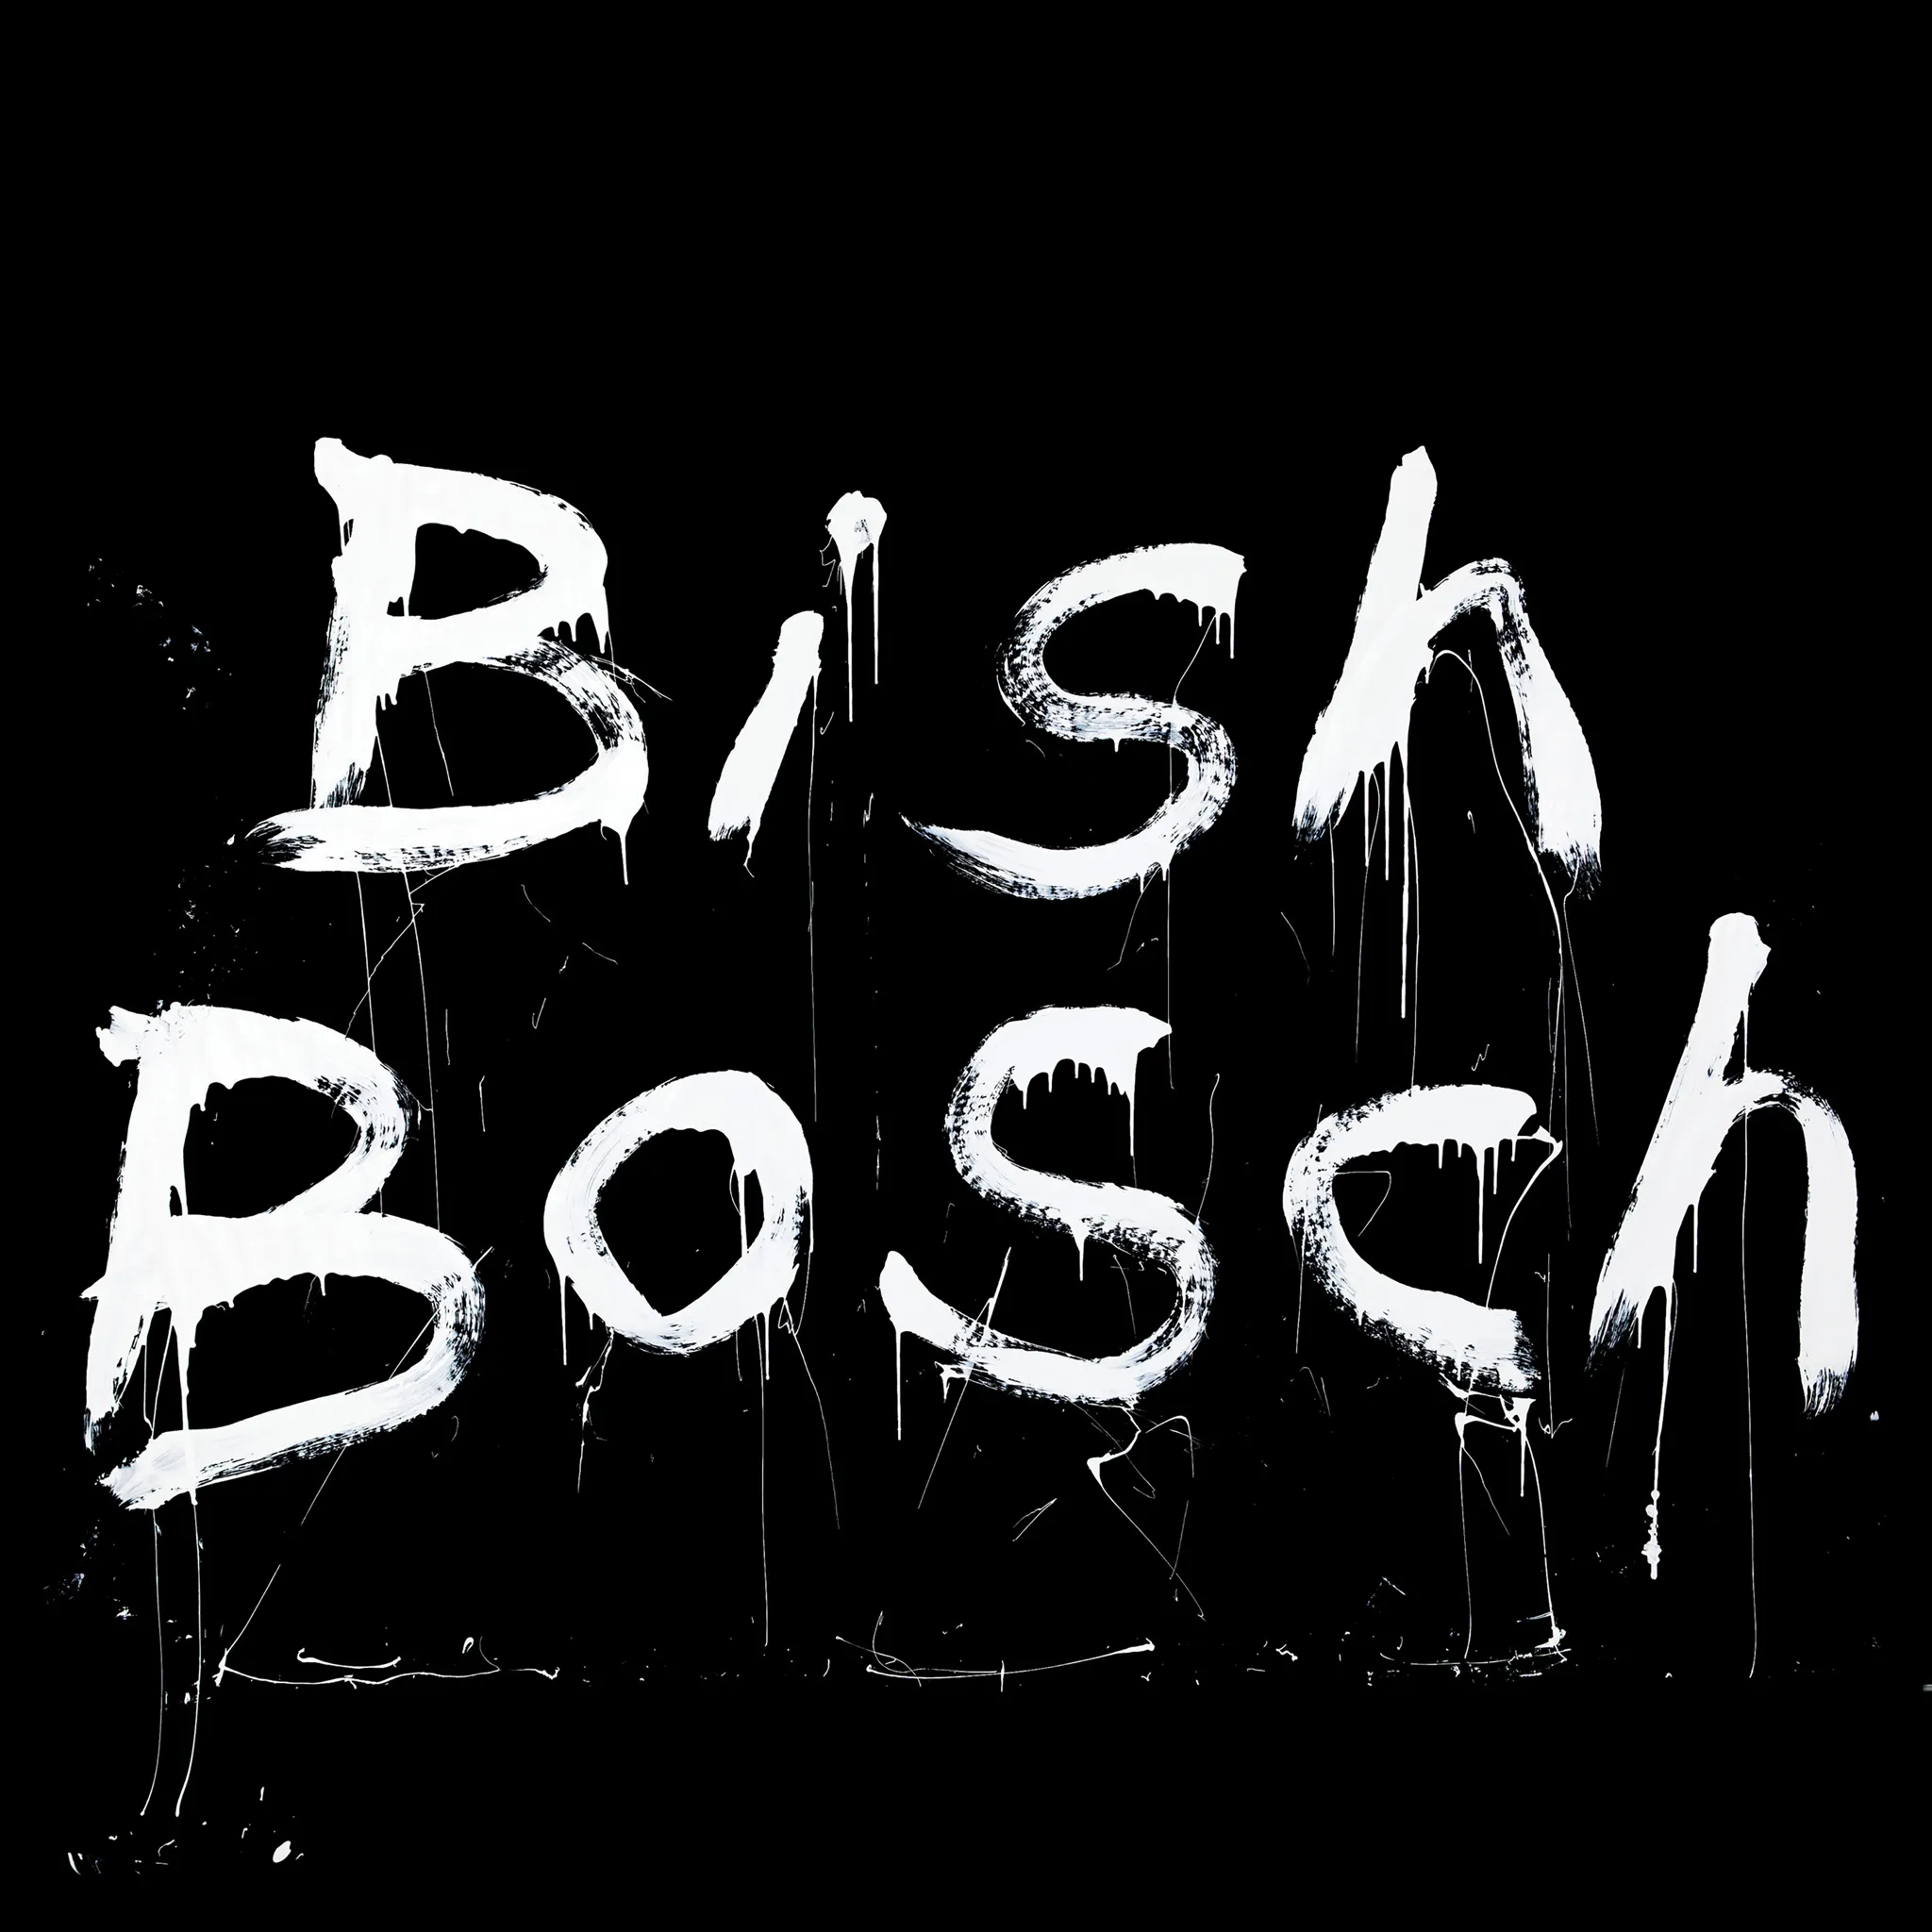 Buy Bish Bosch via Rough Trade